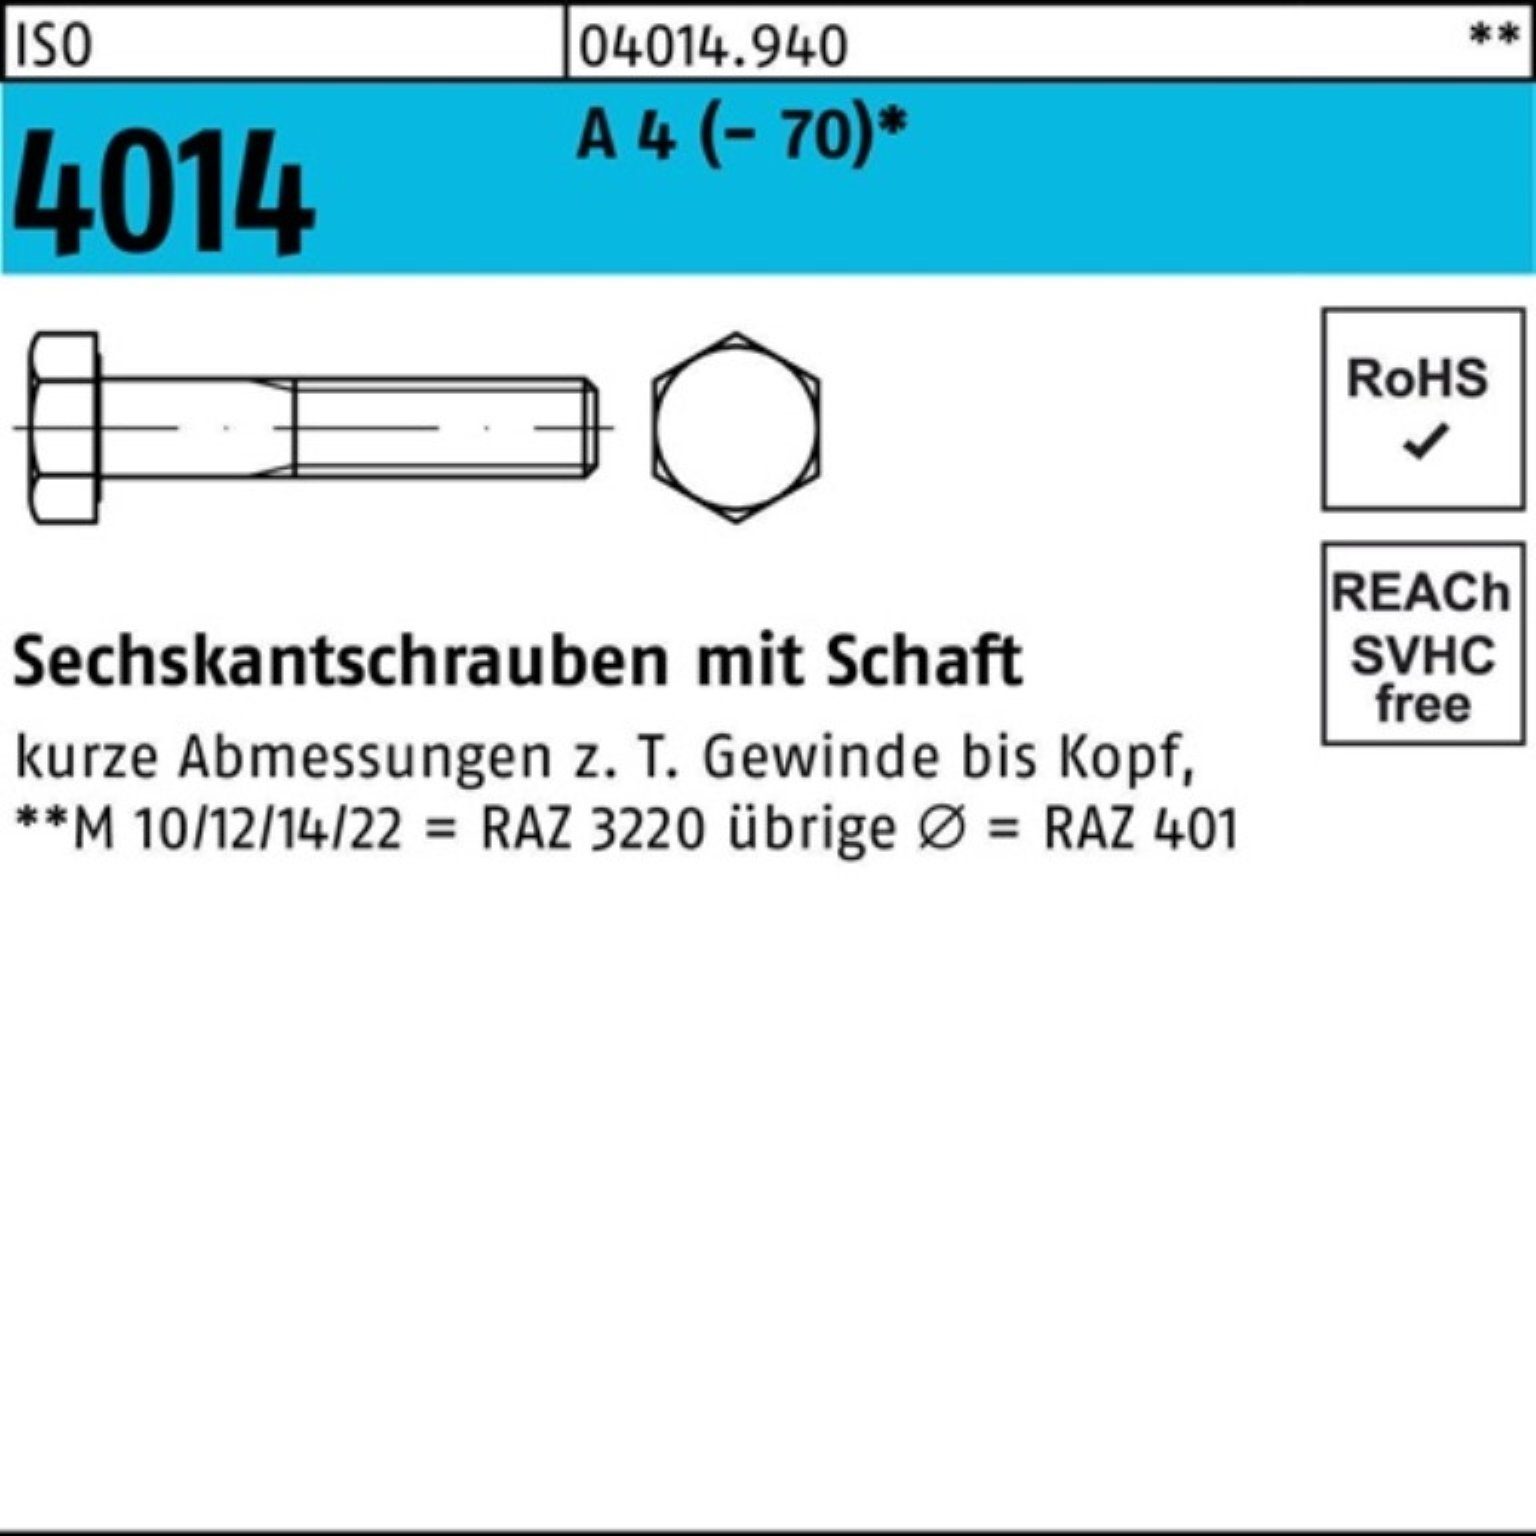 ISO A Bufab Stück M36x 1 4014 Sechskantschraube Schaft 100er Pack Sechskantschraube 4 ISO 240